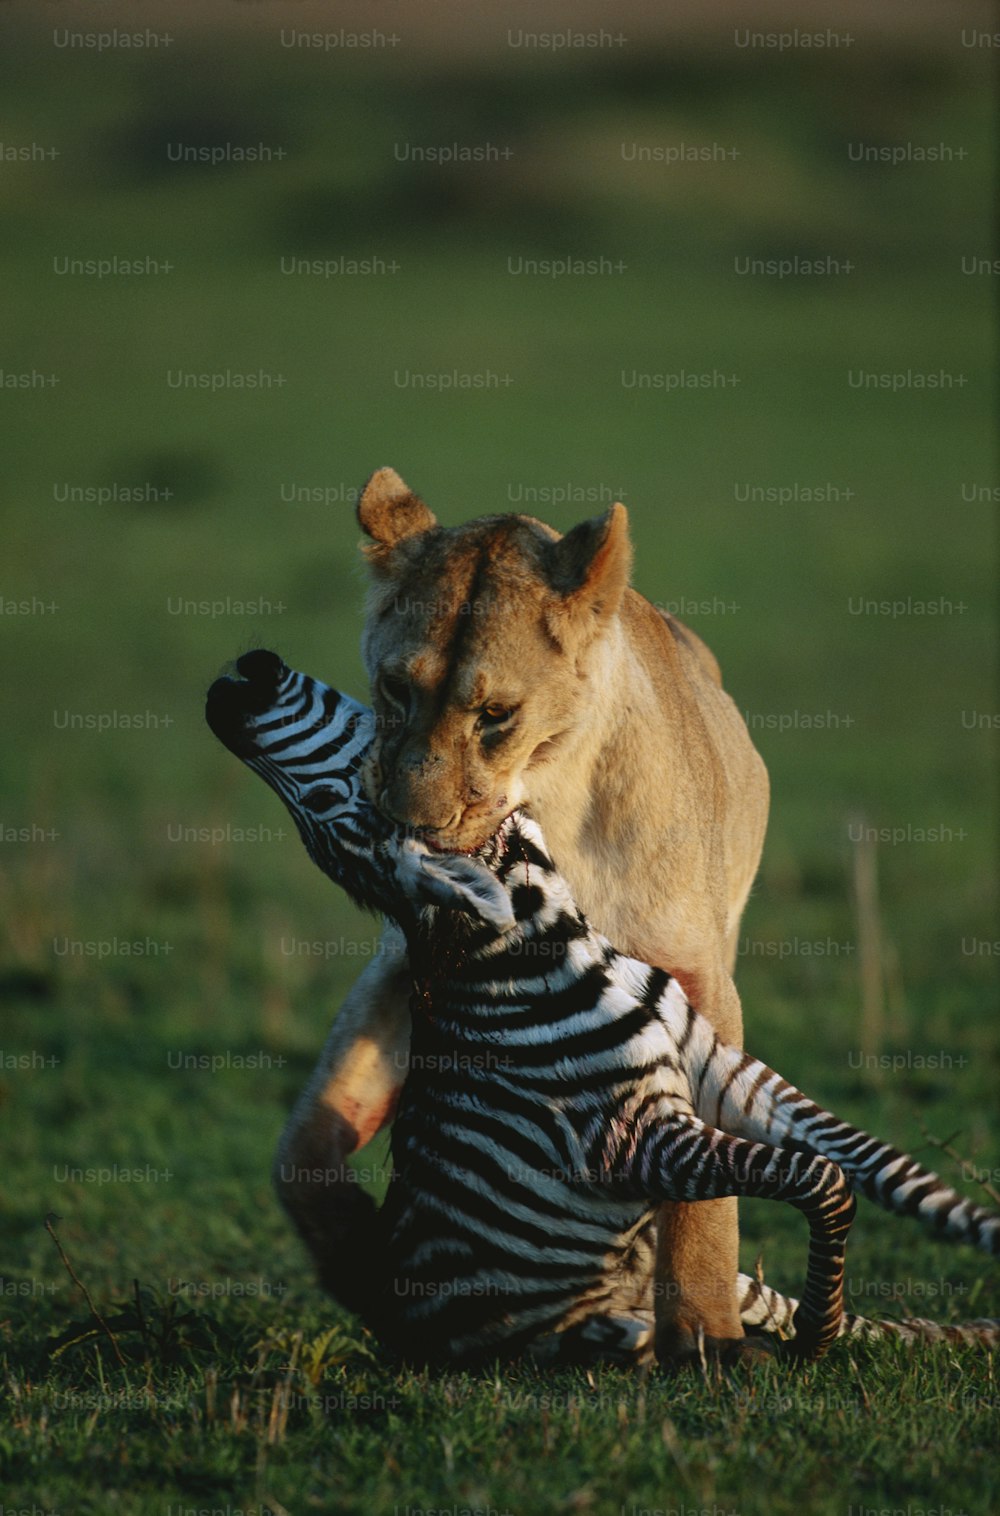 Un león está jugando con una cebra en un campo